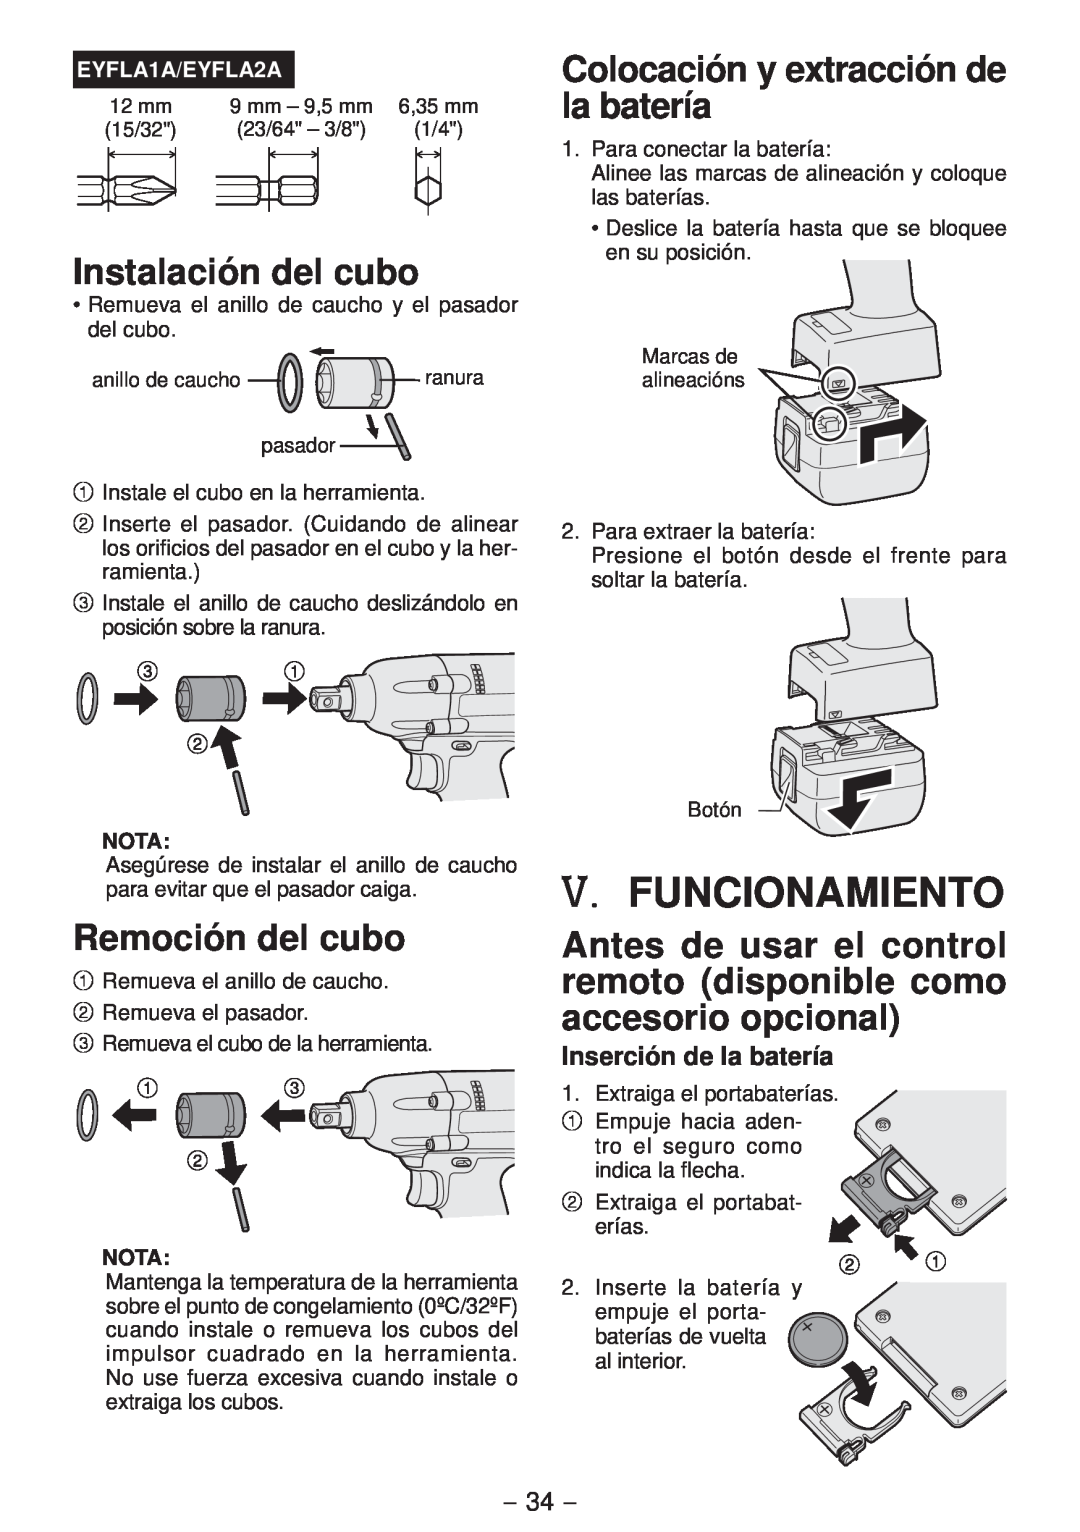 Panasonic EYFLA1A V. Funcionamiento, Instalación del cubo, Remoción del cubo, Colocación y extracción de la batería, Nota 